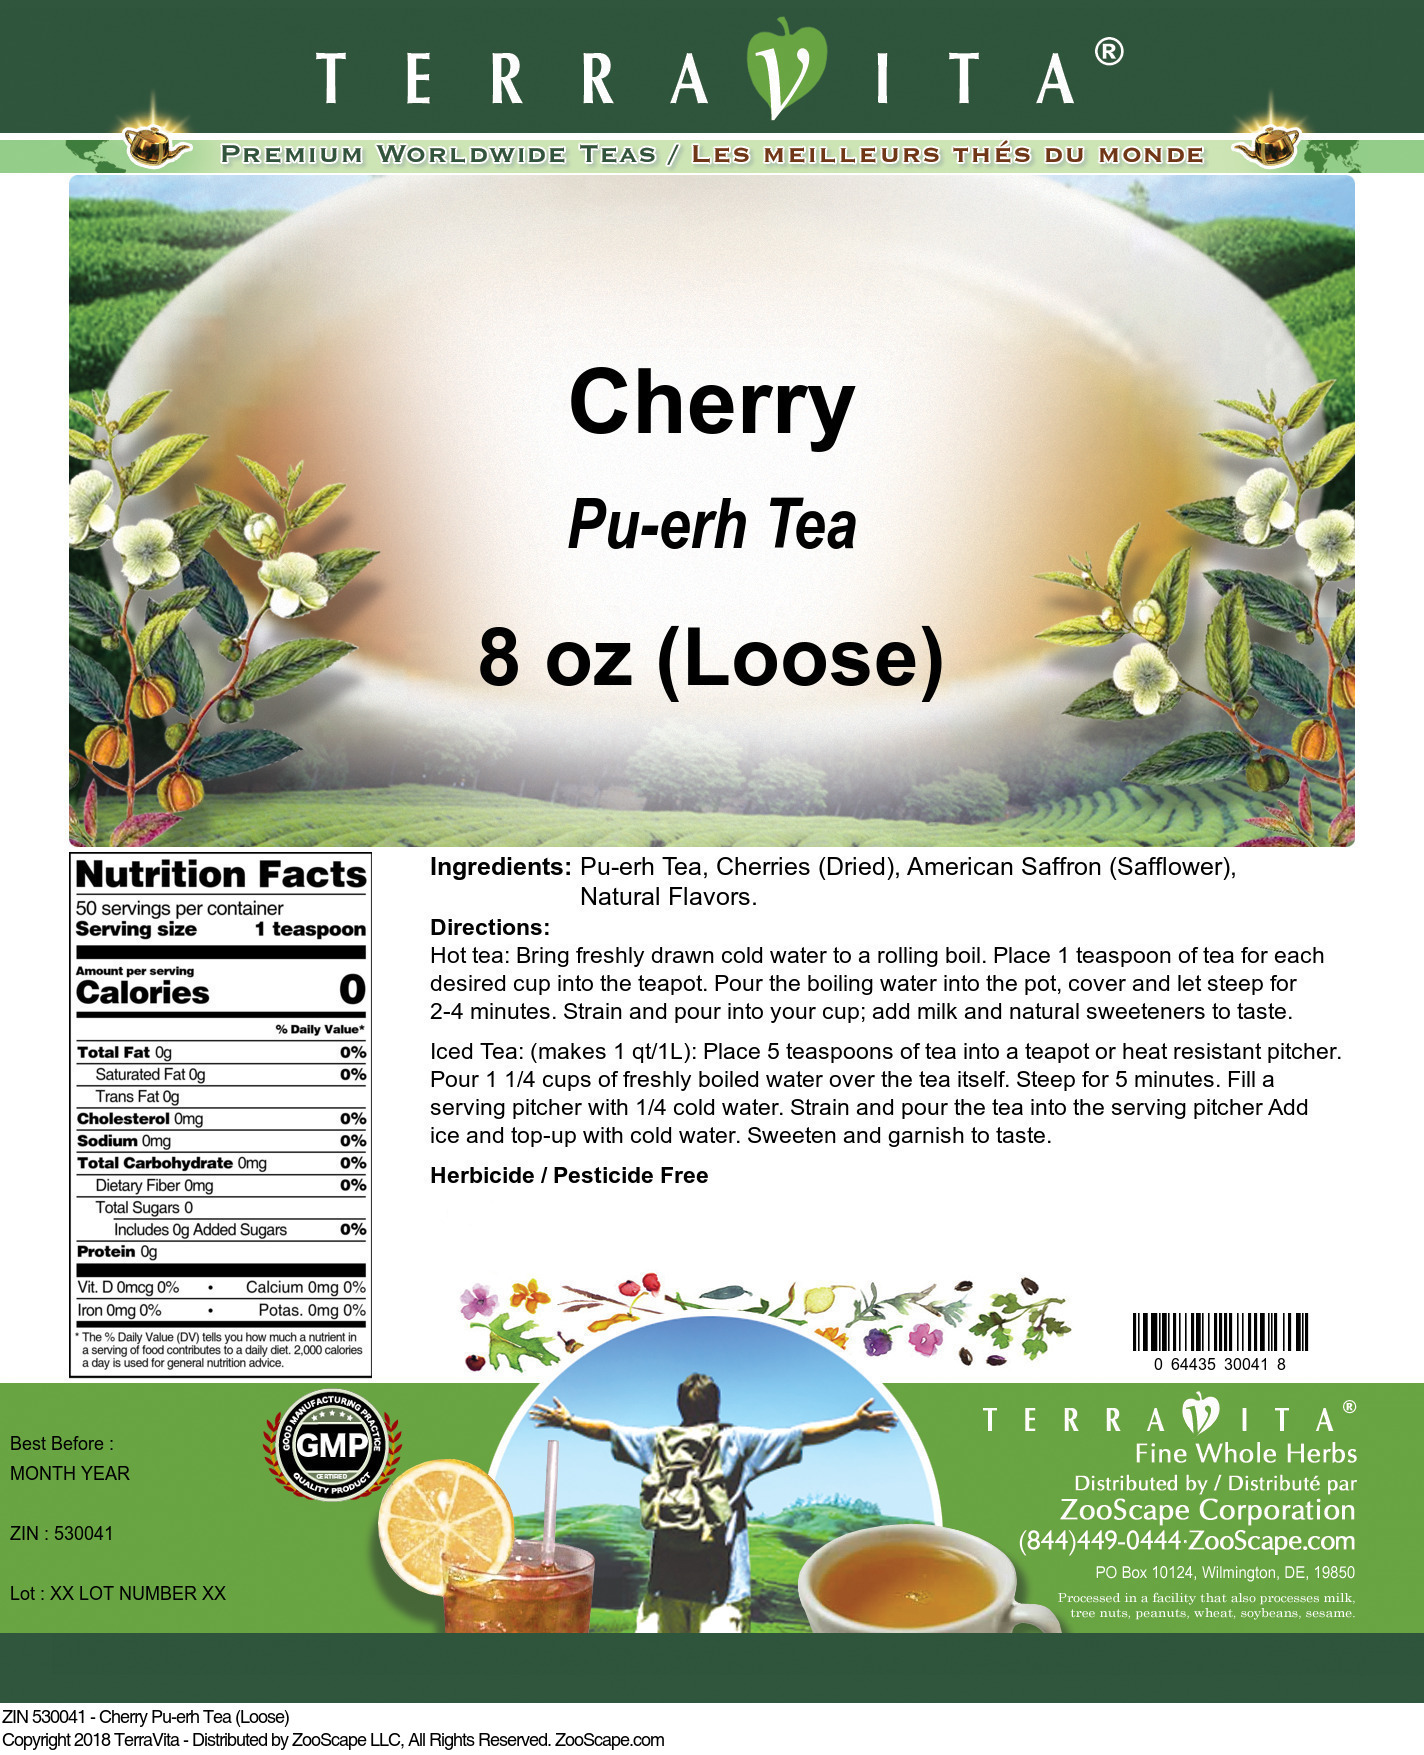 Cherry Pu-erh Tea (Loose) - Label